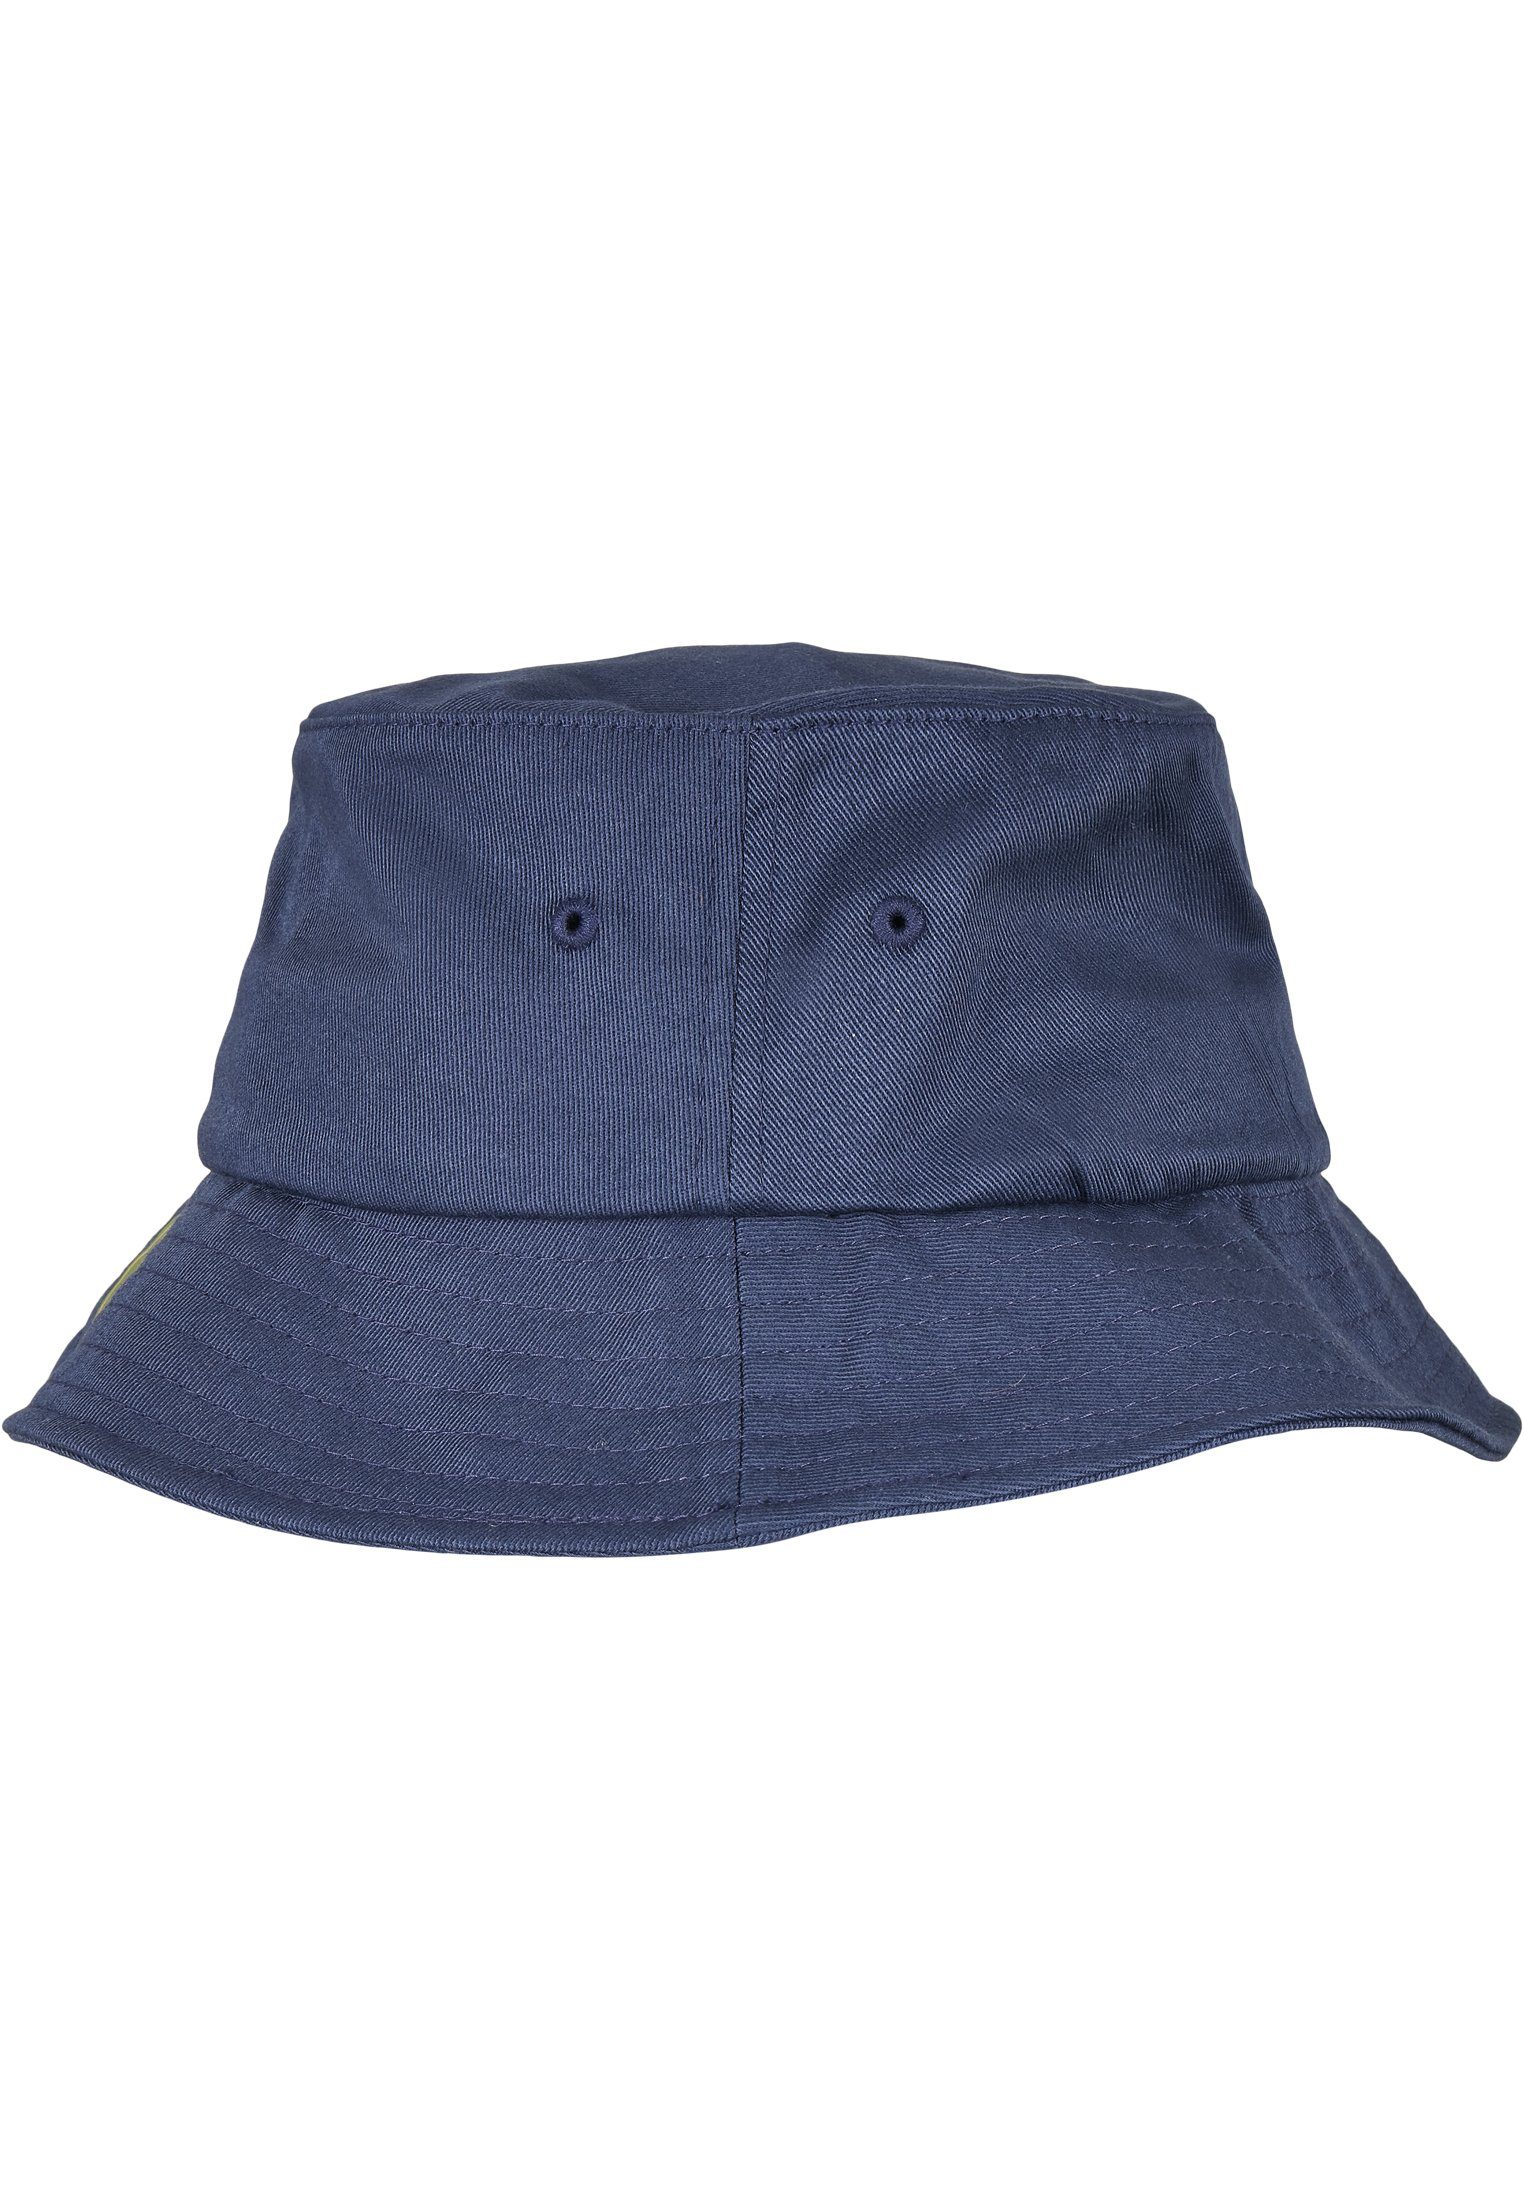 Cap Cotton navy Organic Flexfit Bucket Flex Hat Accessoires